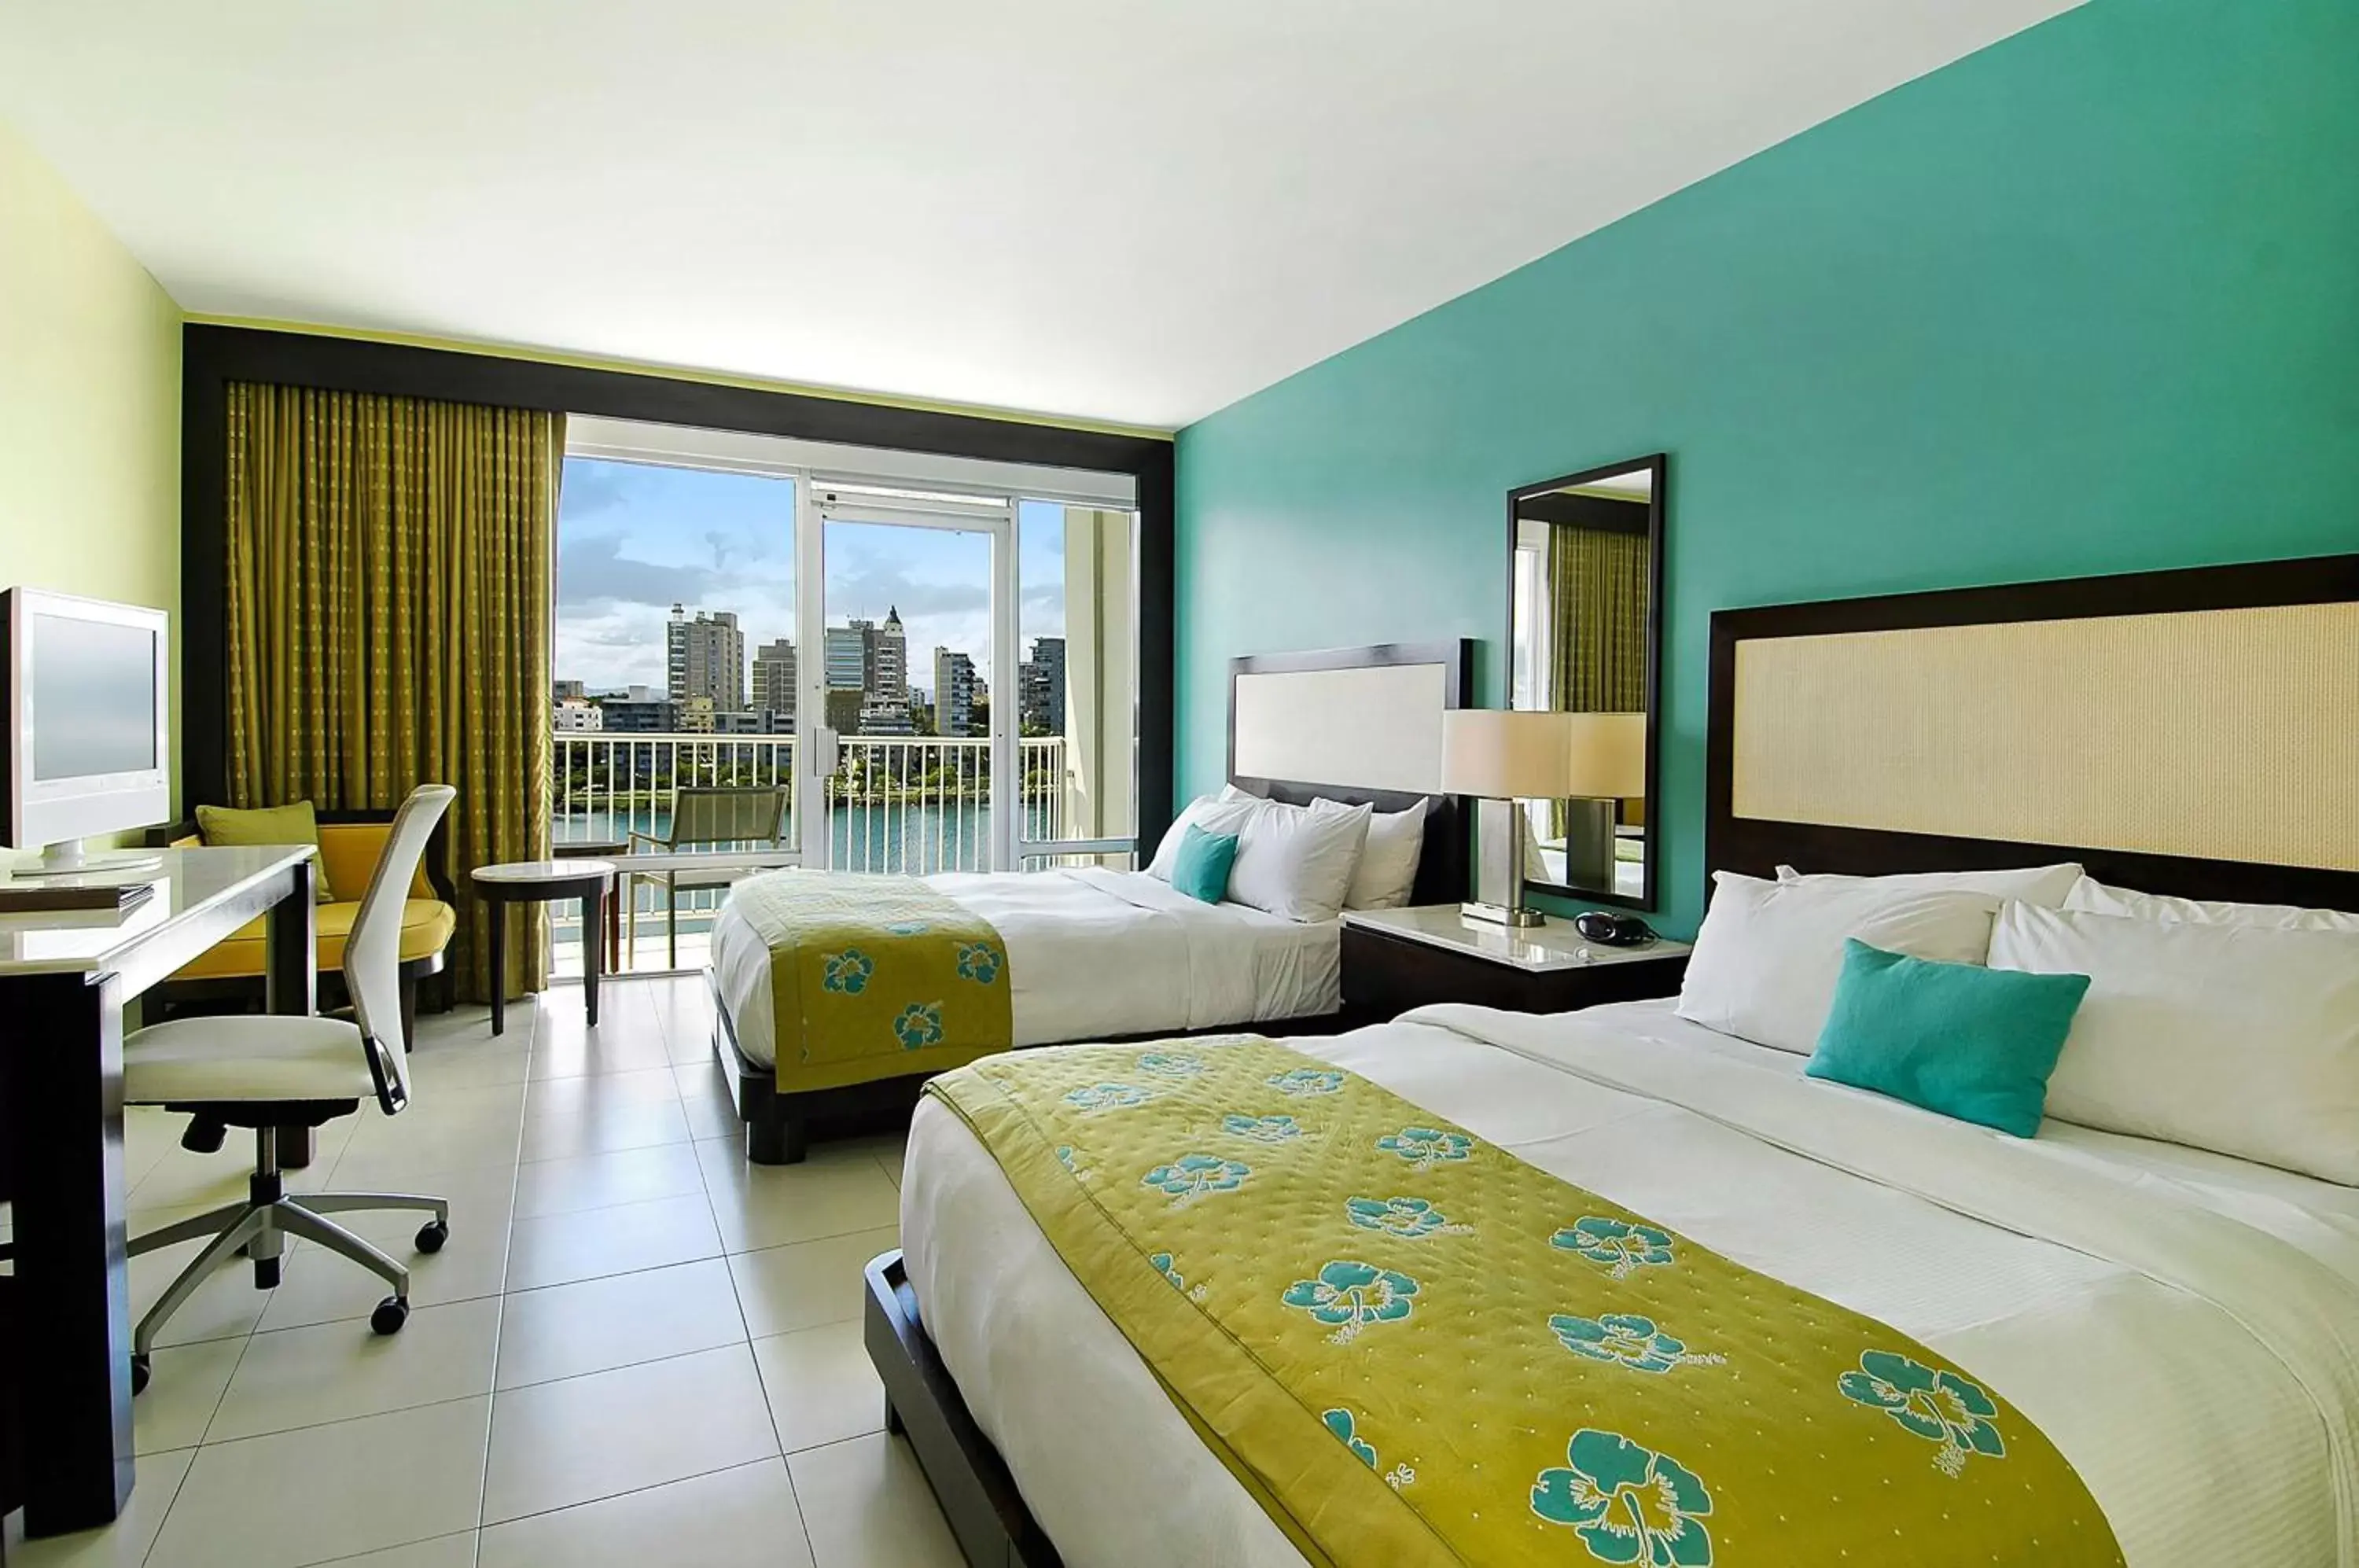 Bedroom in The Condado Plaza Hilton